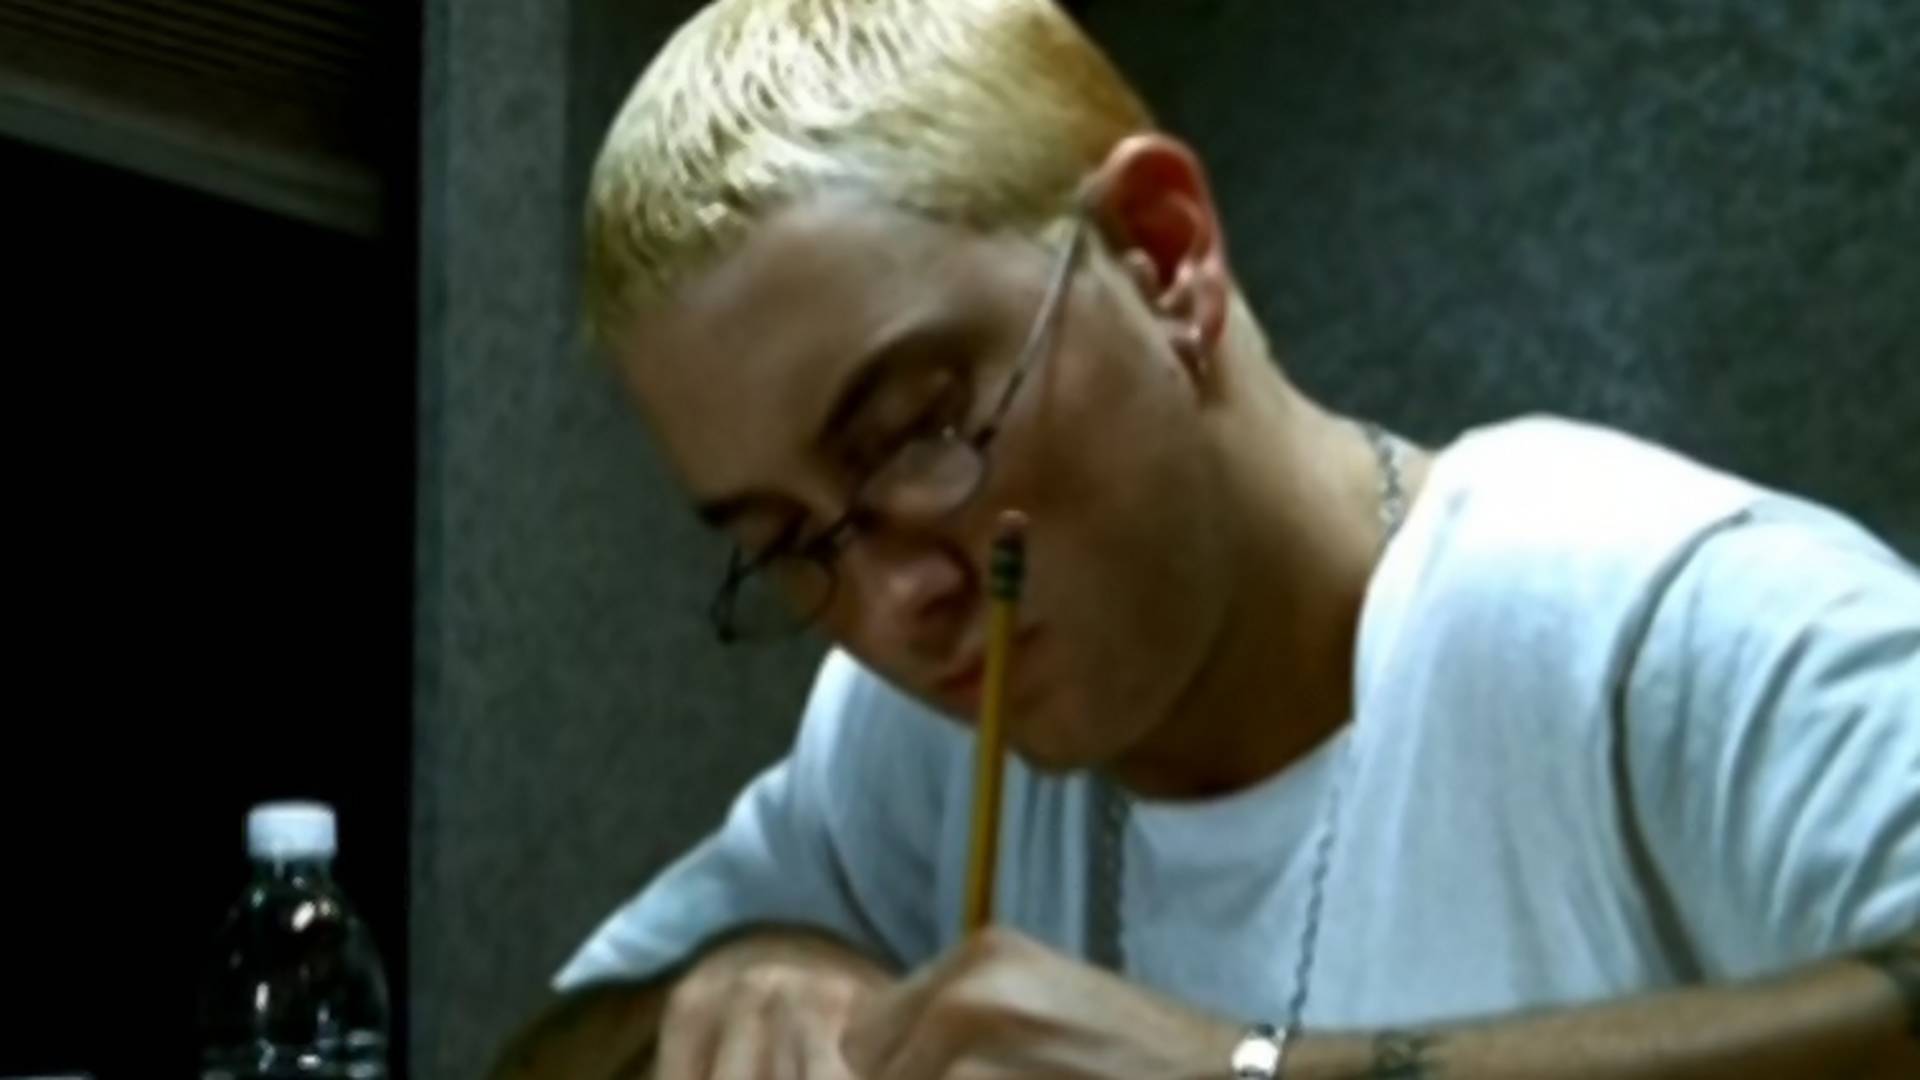 Słowo z piosenki Eminema trafiło do słownika Oxfordu